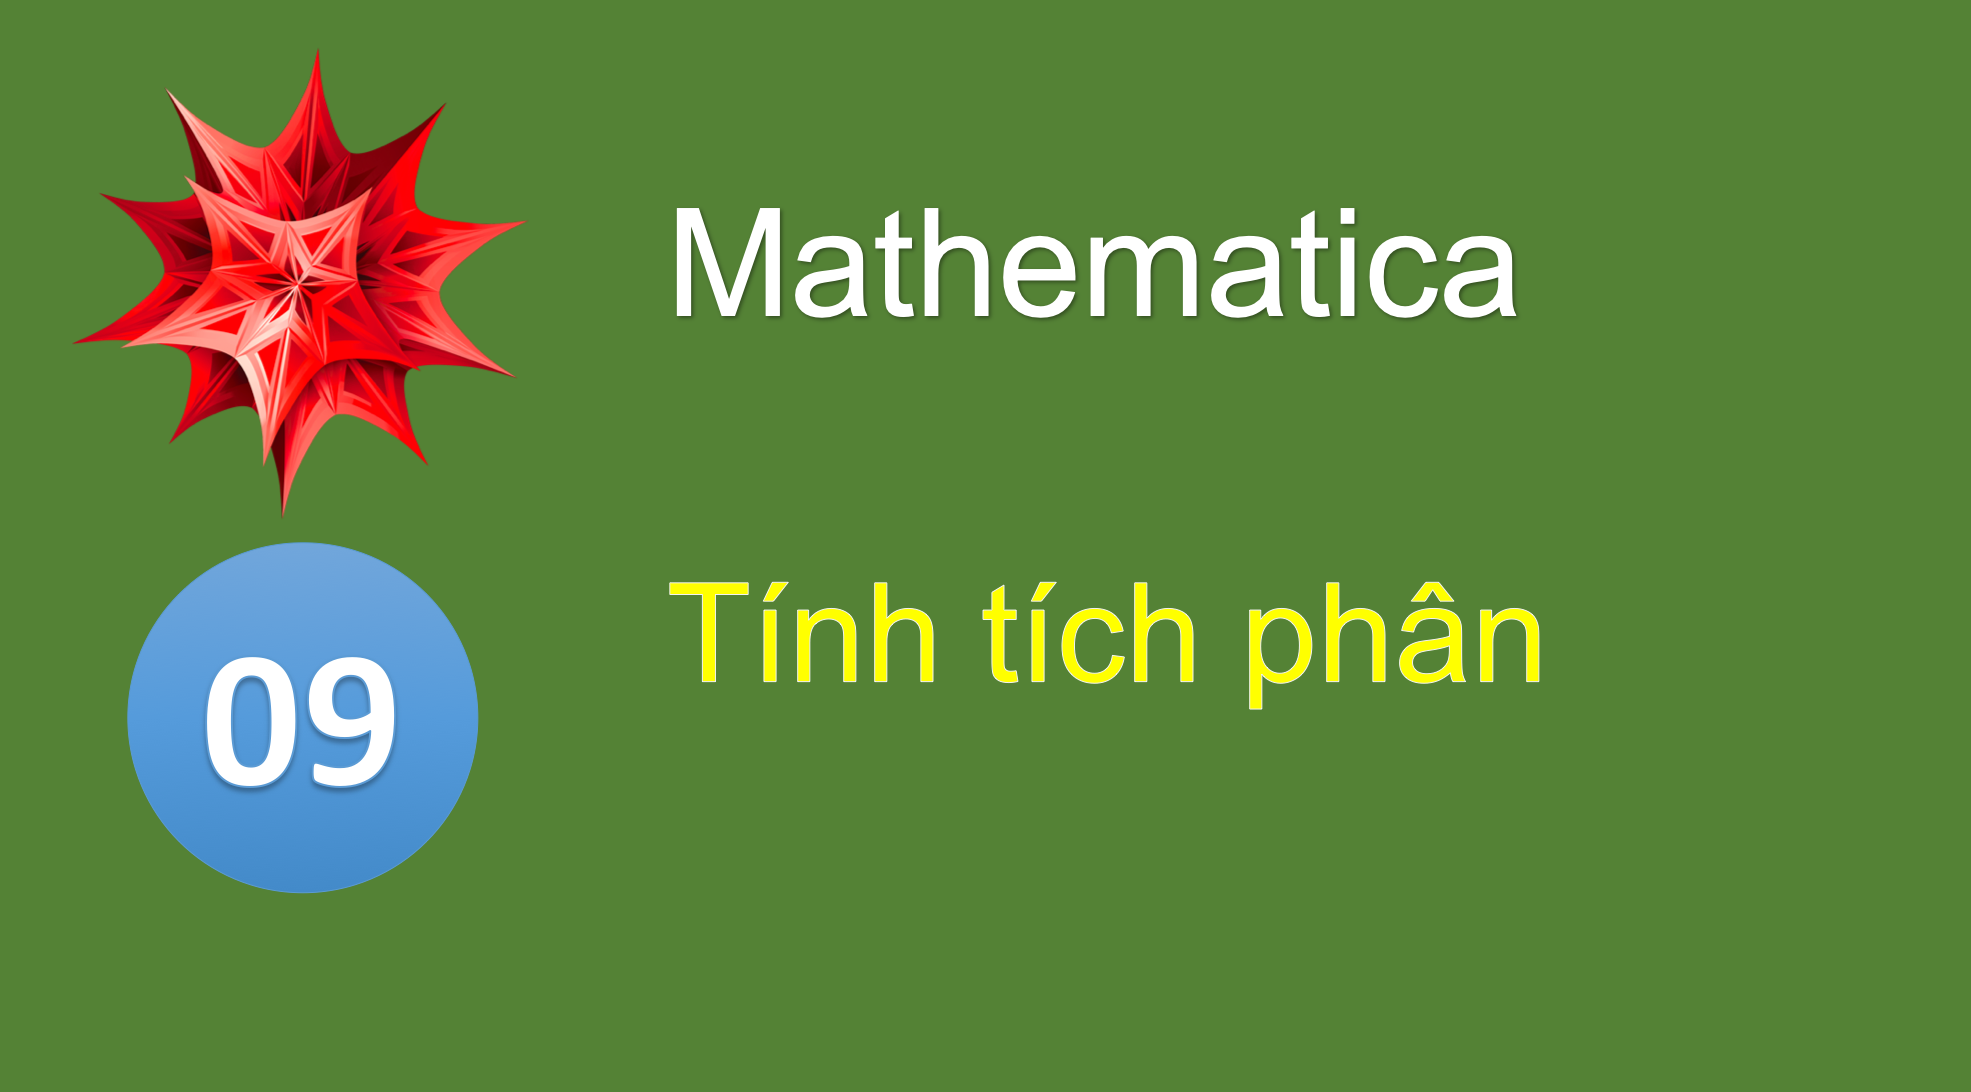 tính tích phân bằng mathematica